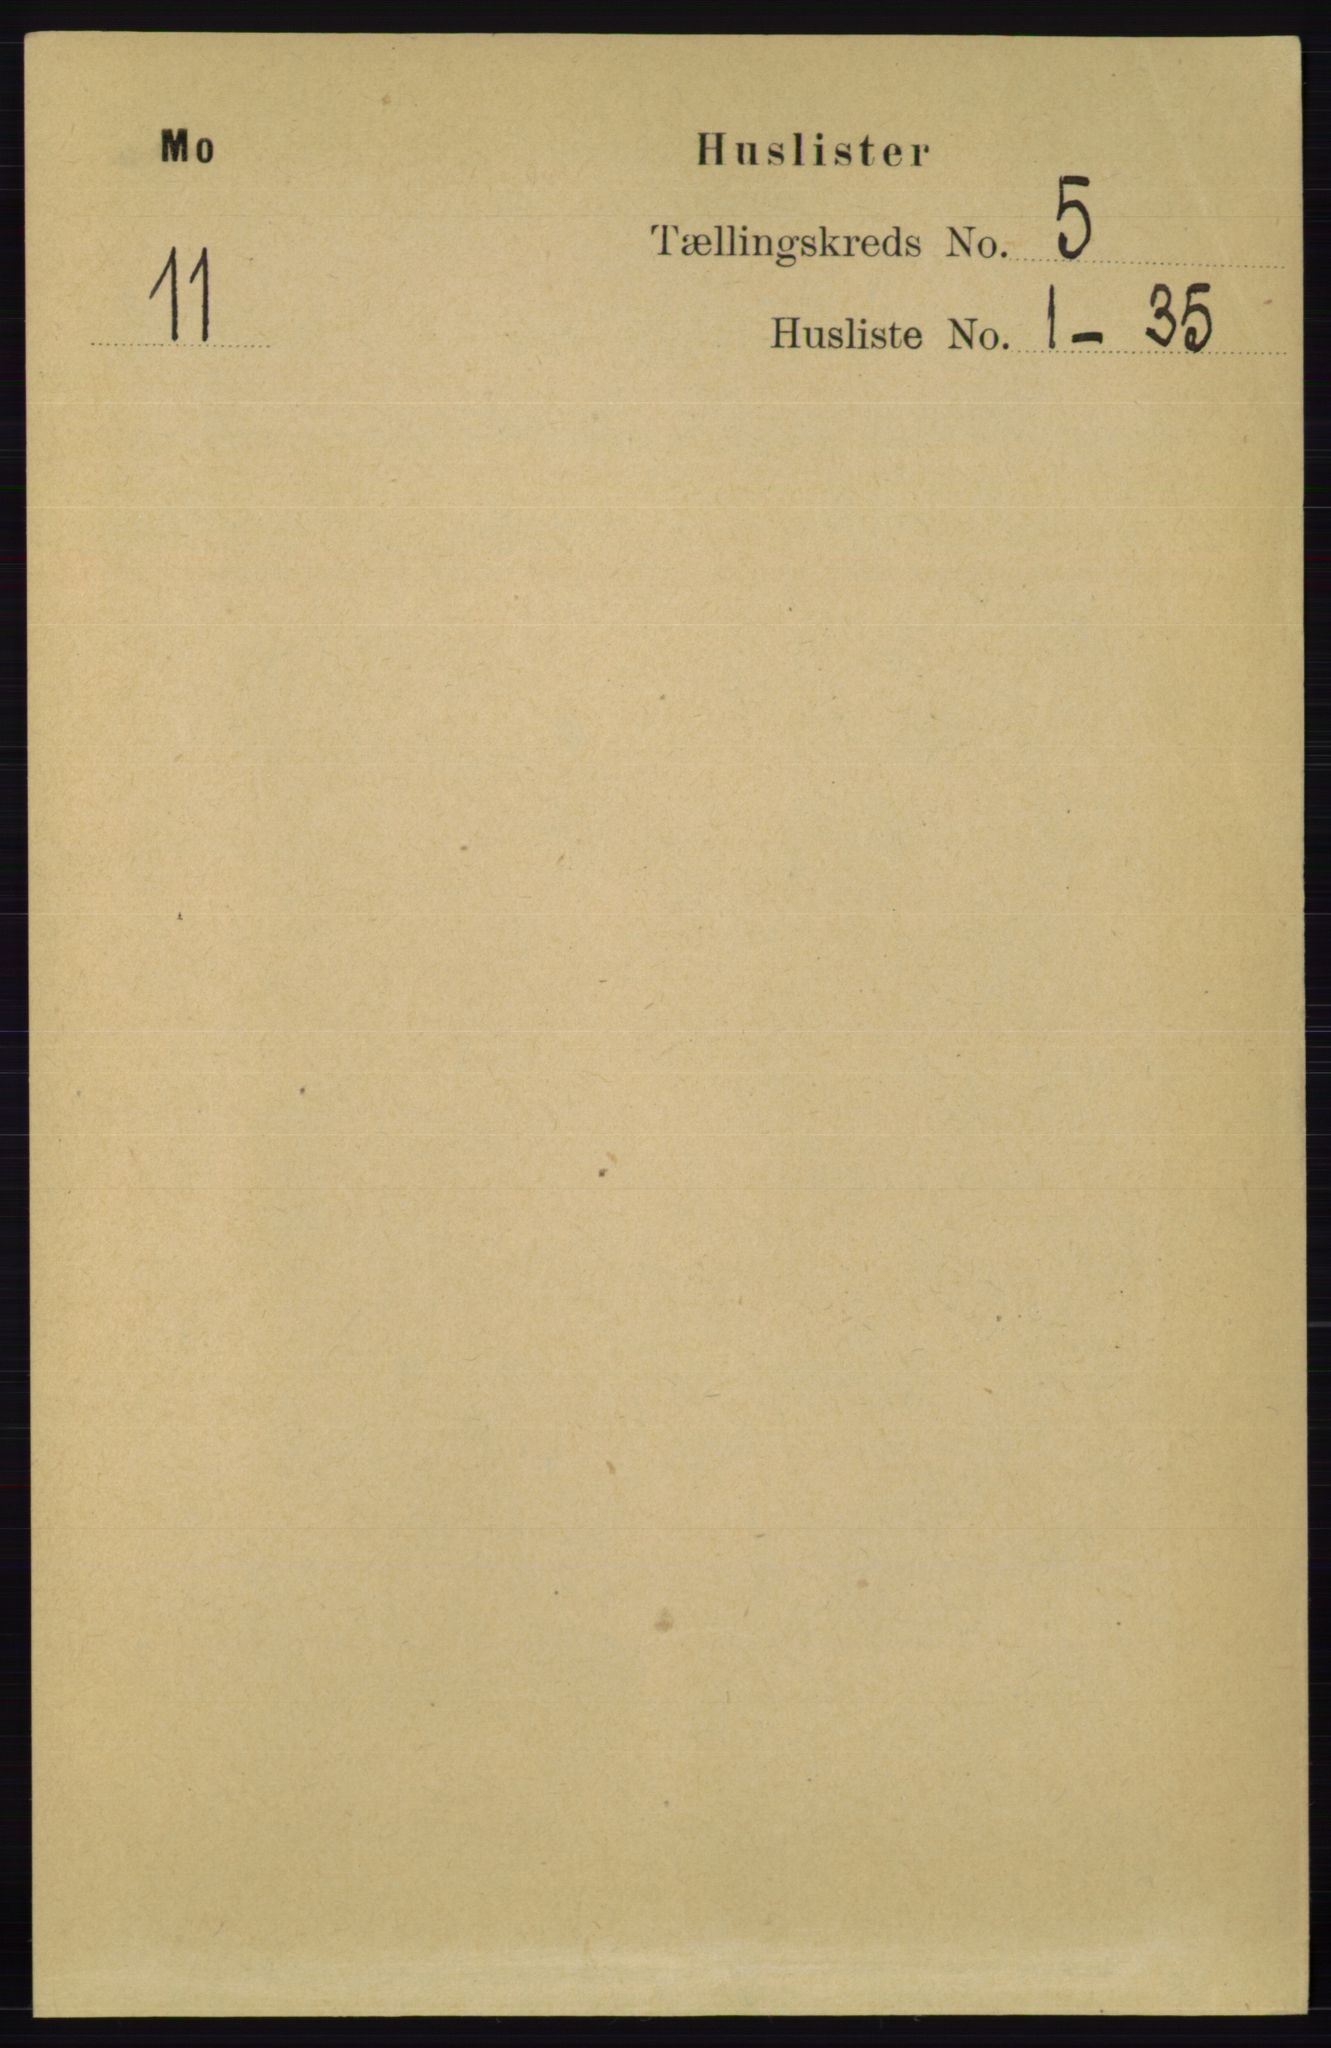 RA, Folketelling 1891 for 0832 Mo herred, 1891, s. 1253